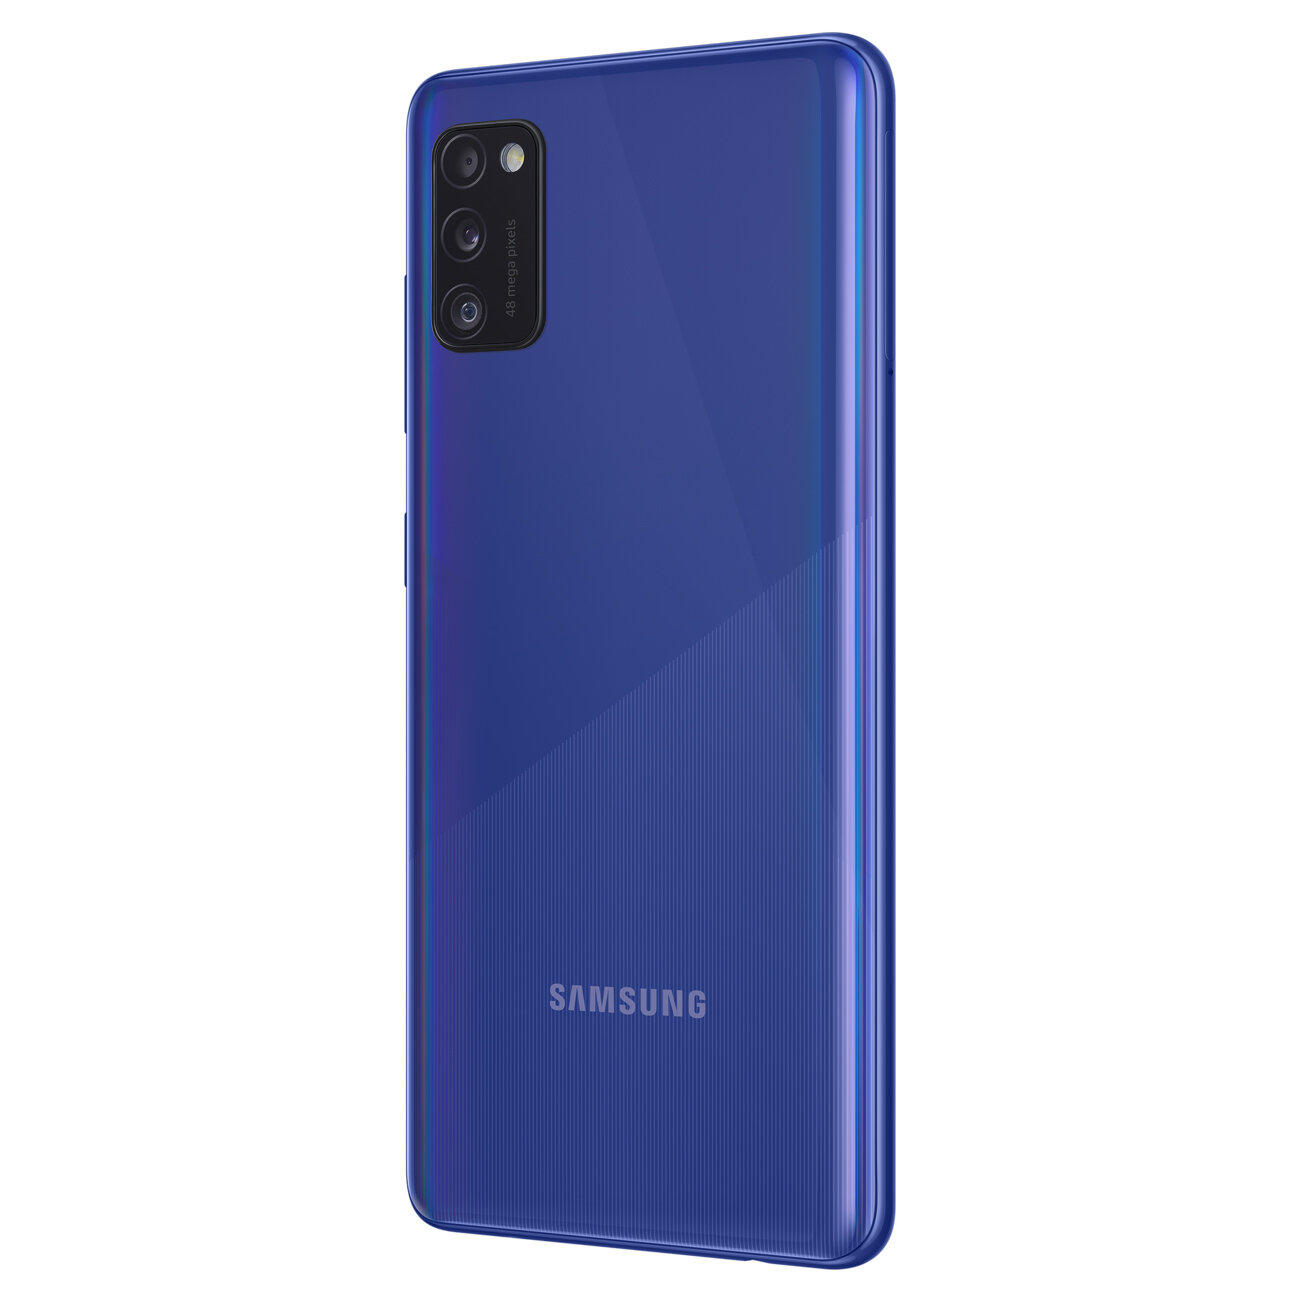 Smartfon Samsung Galaxy A41 LTE (A415) 4/64GB